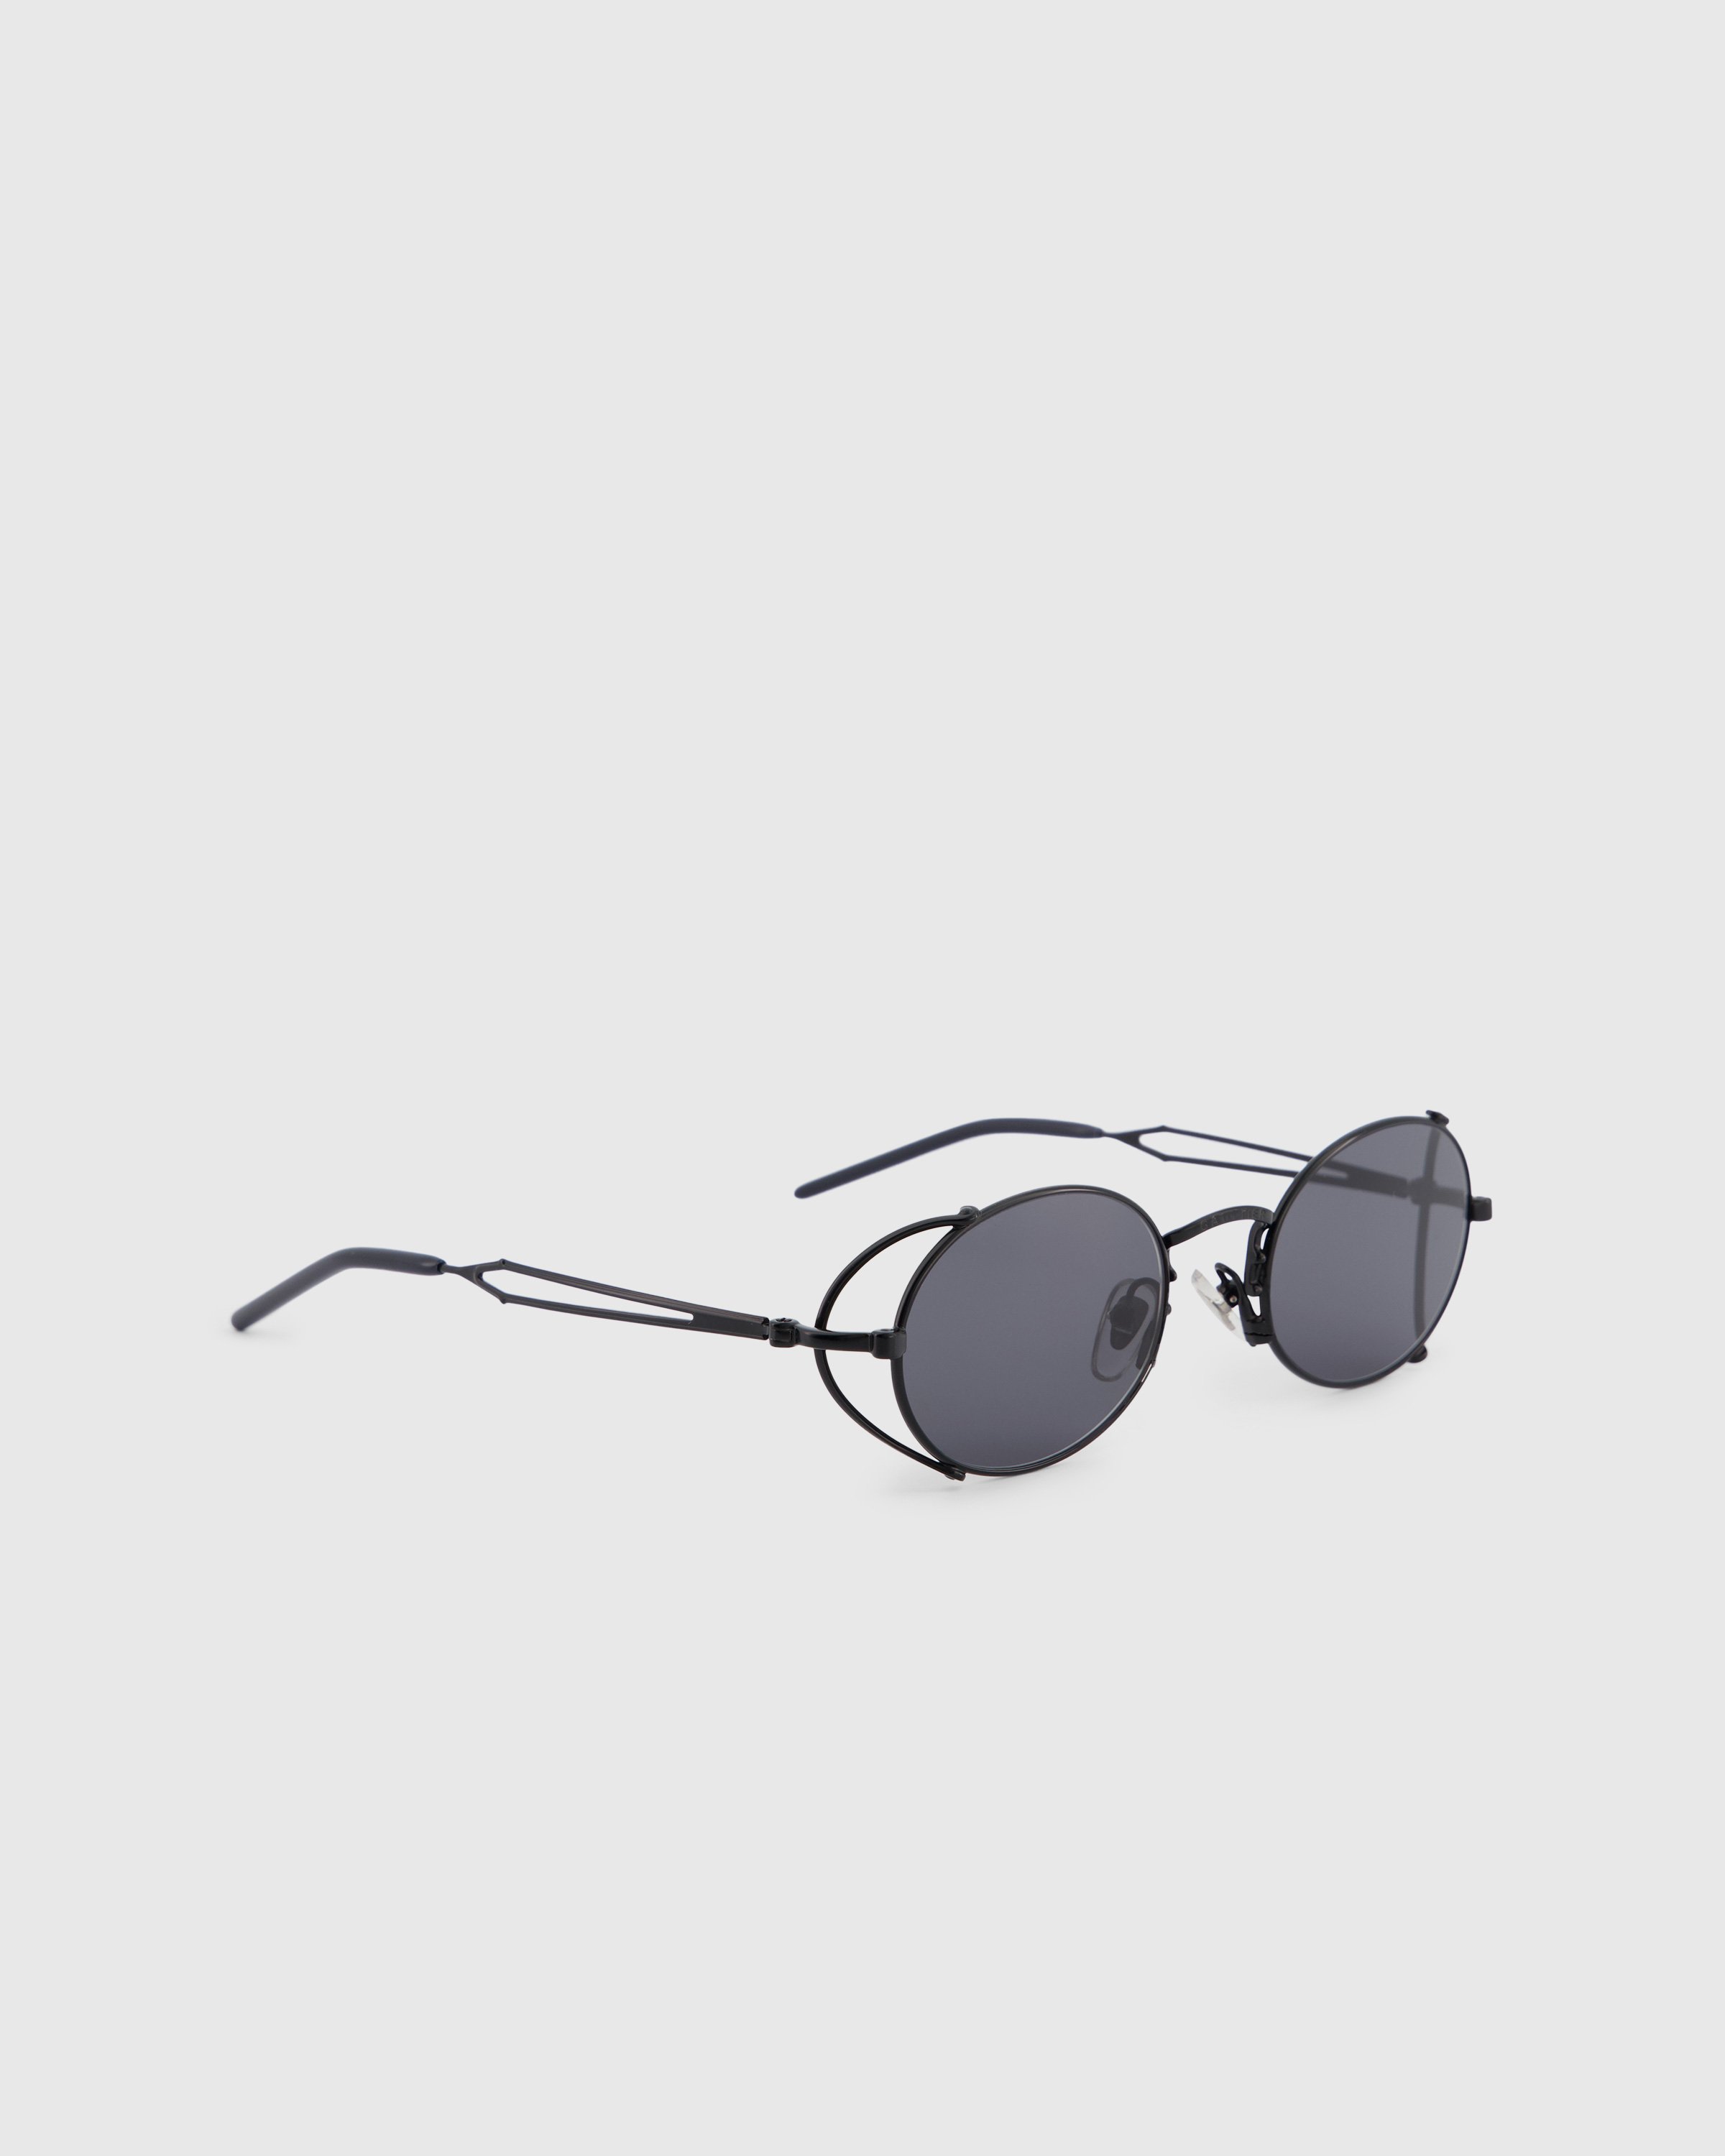 Jean Paul Gaultier x Burna Boy - 55-3175 Arceau Sunglasses Black - Accessories - Black - Image 2